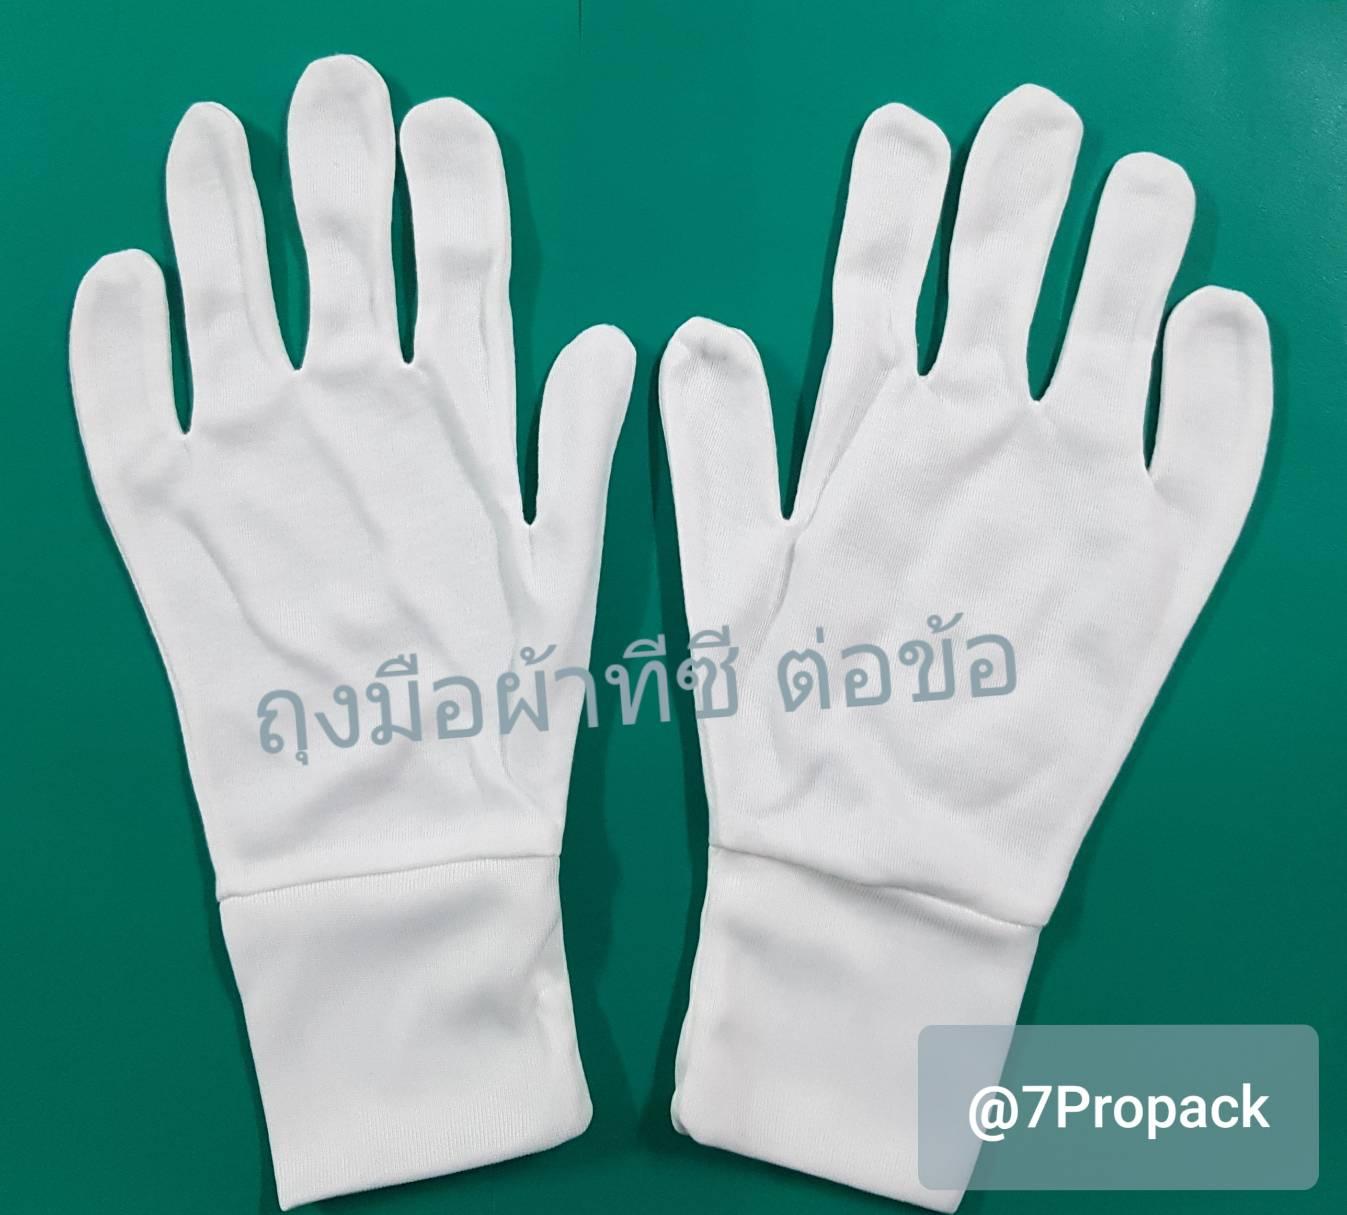 ถุงมือเชียร์ลีดเดอร์ ถุงมือจราจร ถุงมือผ้าทีซี ต่อข้อ ซักได้ สีขาว แพคละ 12 คู่